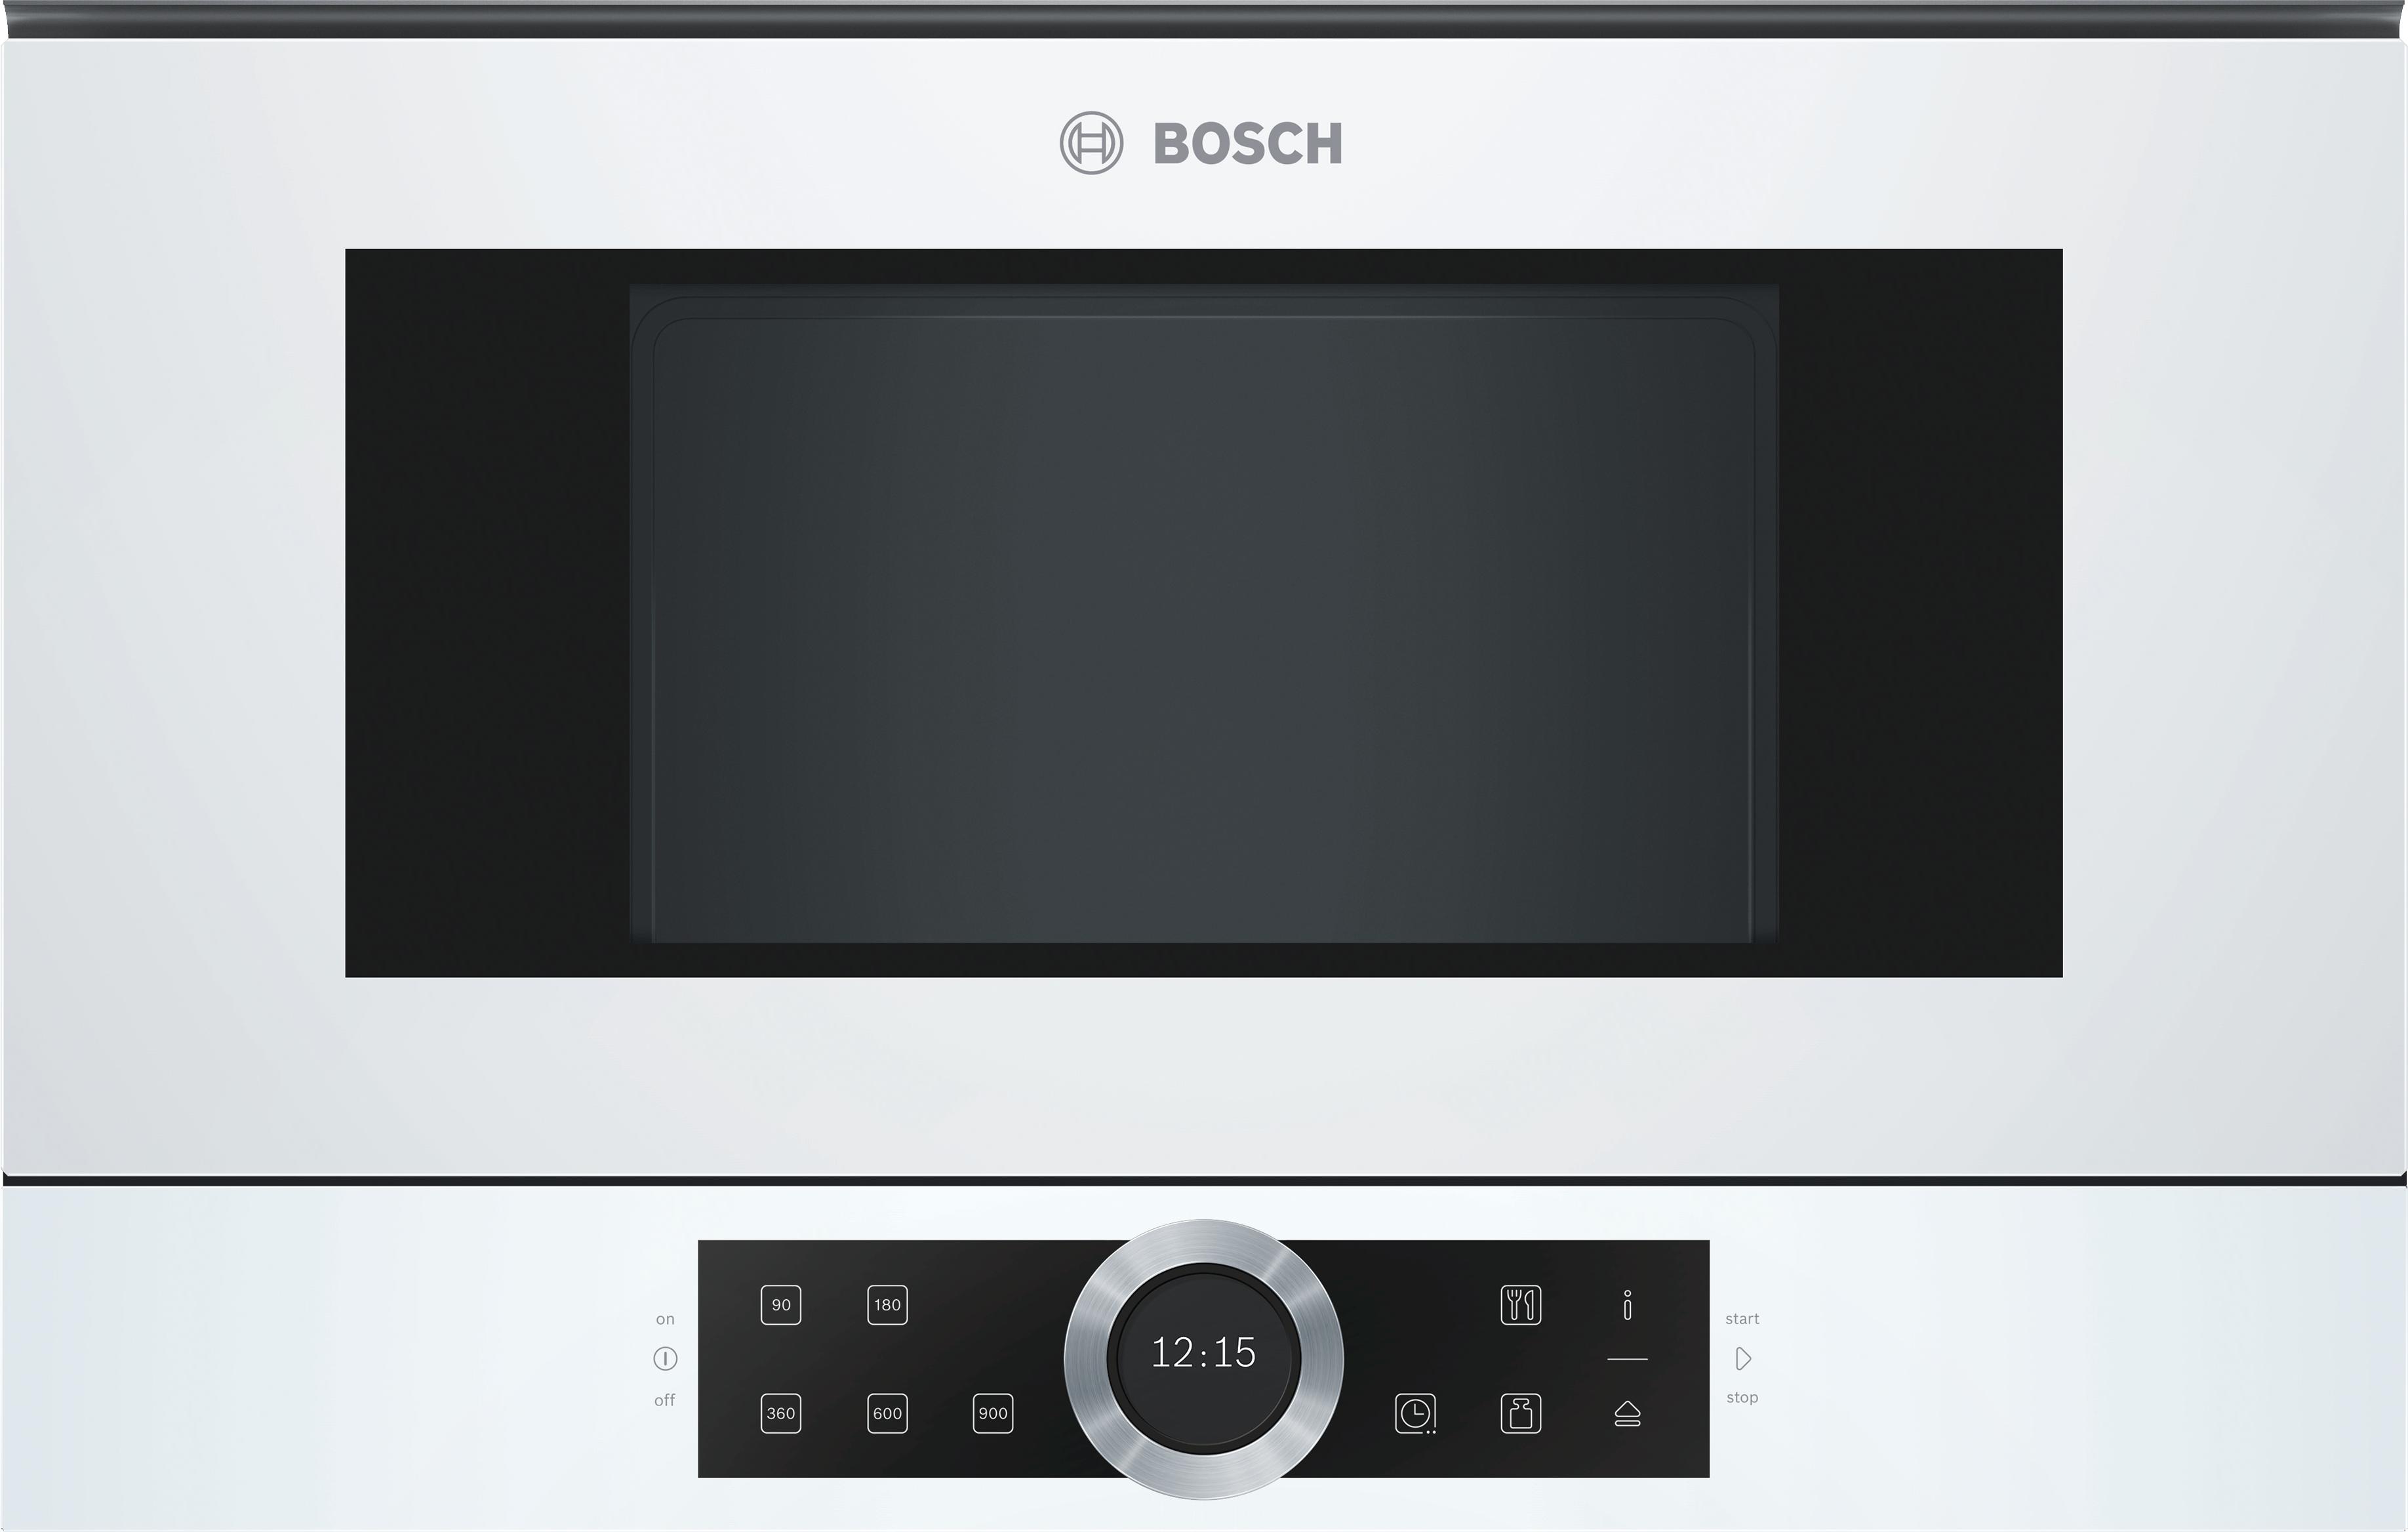 Печь бош купить. Микроволновая печь встраиваемая Bosch bfr634gw1. Микроволновая печь Bosch bfl634gw1 белый. Микроволновая печь встраиваемая Bosch bfl634gb1. Встраиваемая микроволновая печь Bosch bfl520mw0.